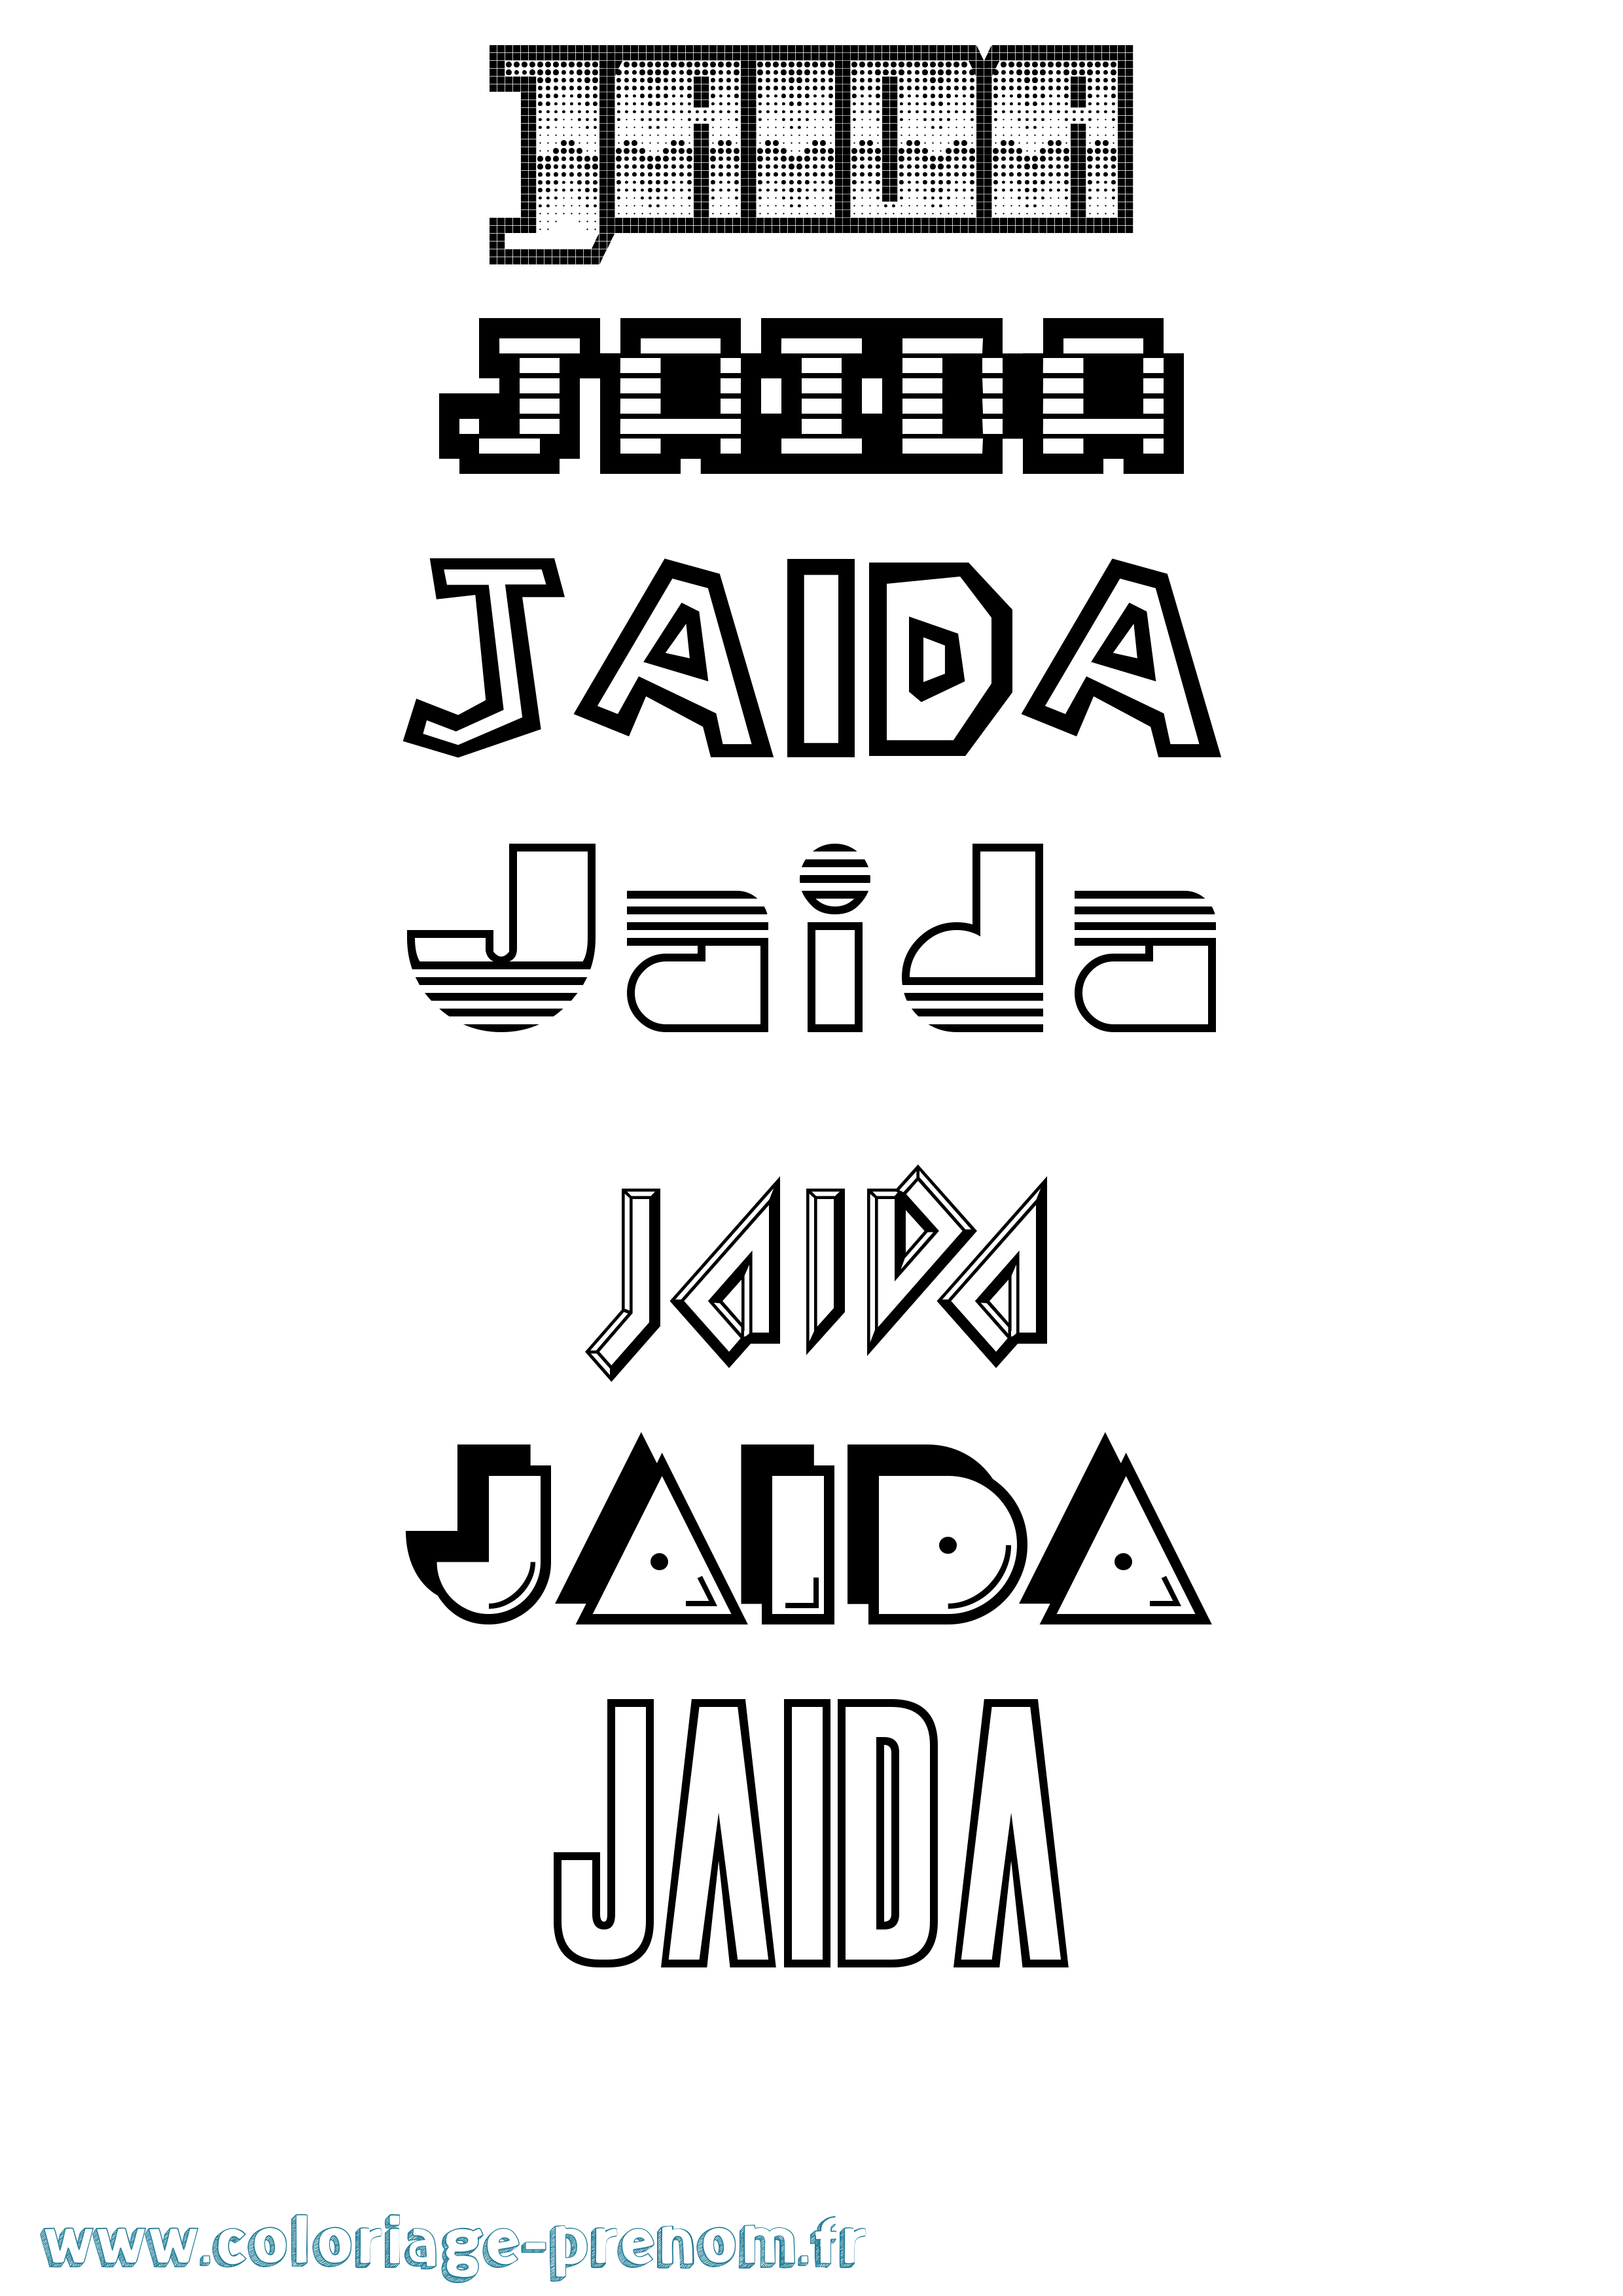 Coloriage prénom Jaida Jeux Vidéos